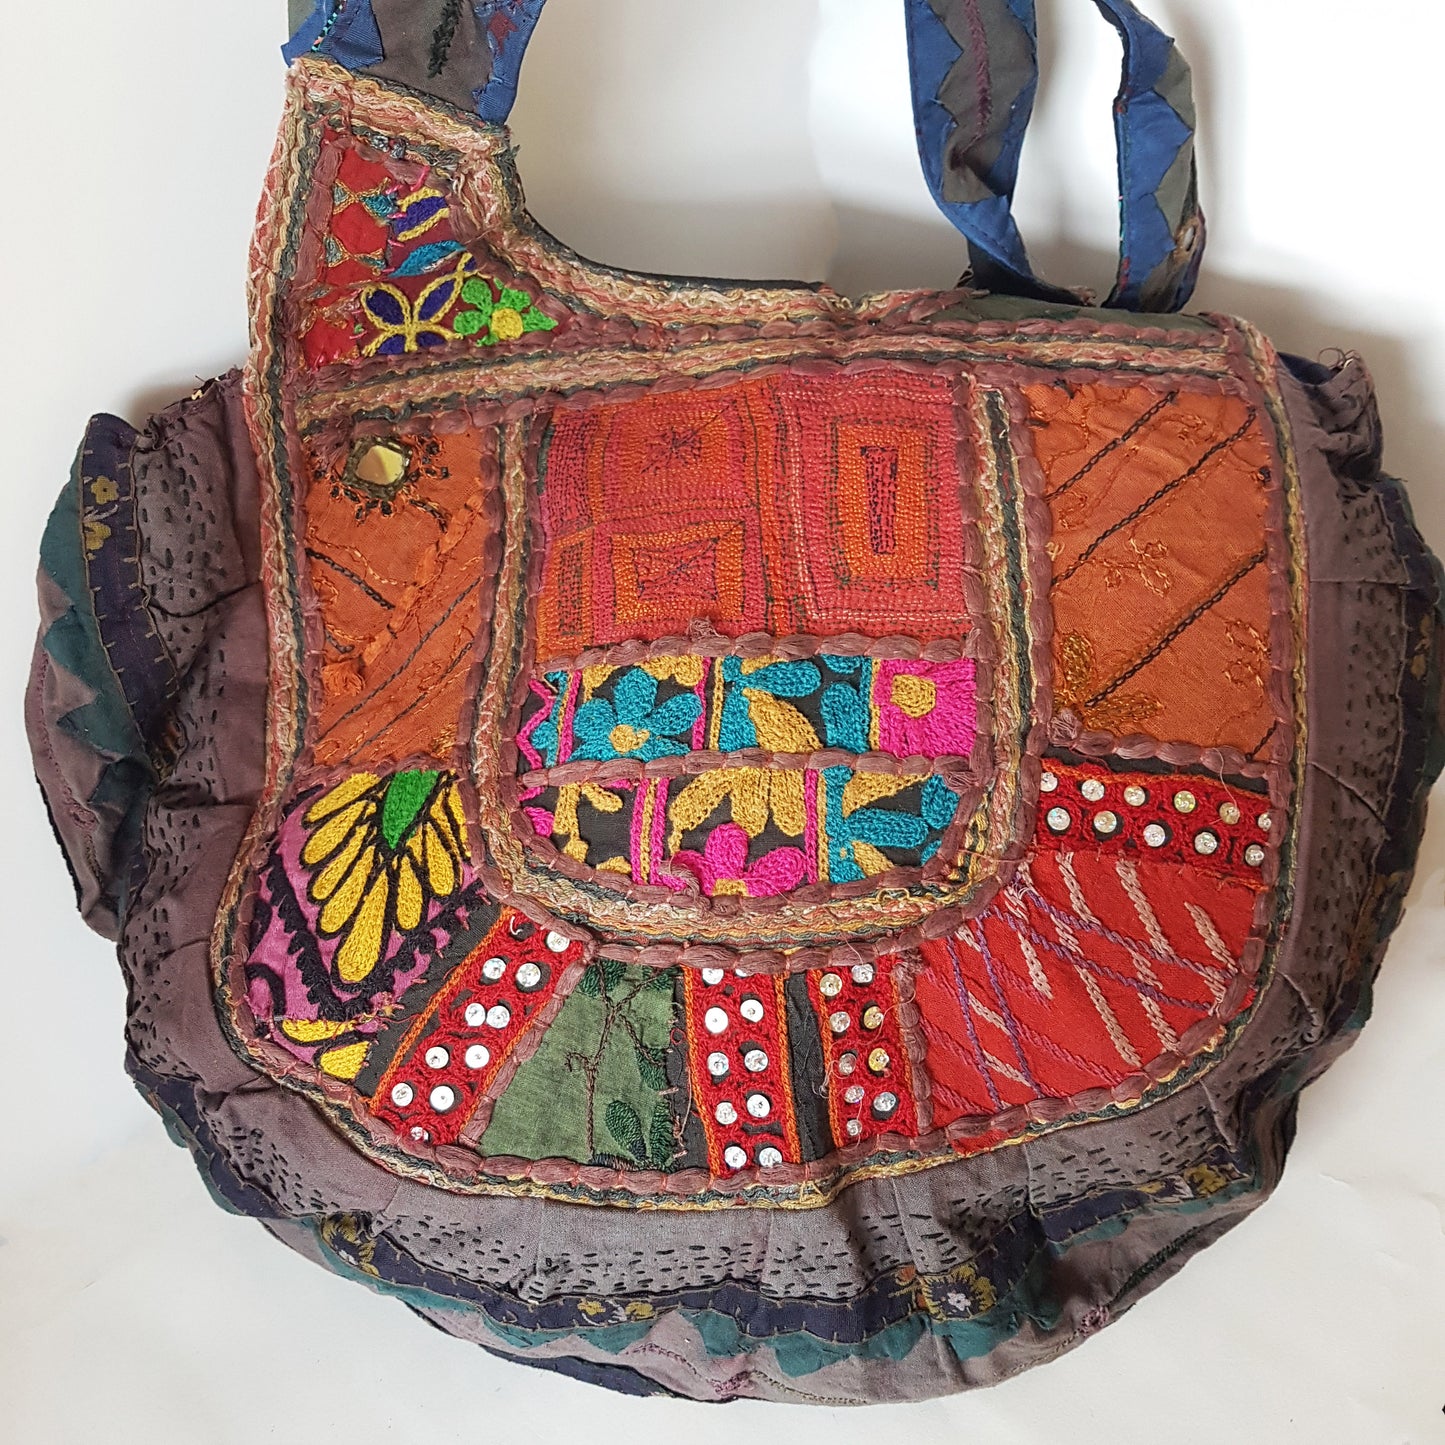 Sac bandoulière Banjara. Authentique sac de rangement tribal gitan vintage en rouge riche et violet avec miroir brodé. Une beauté unique.